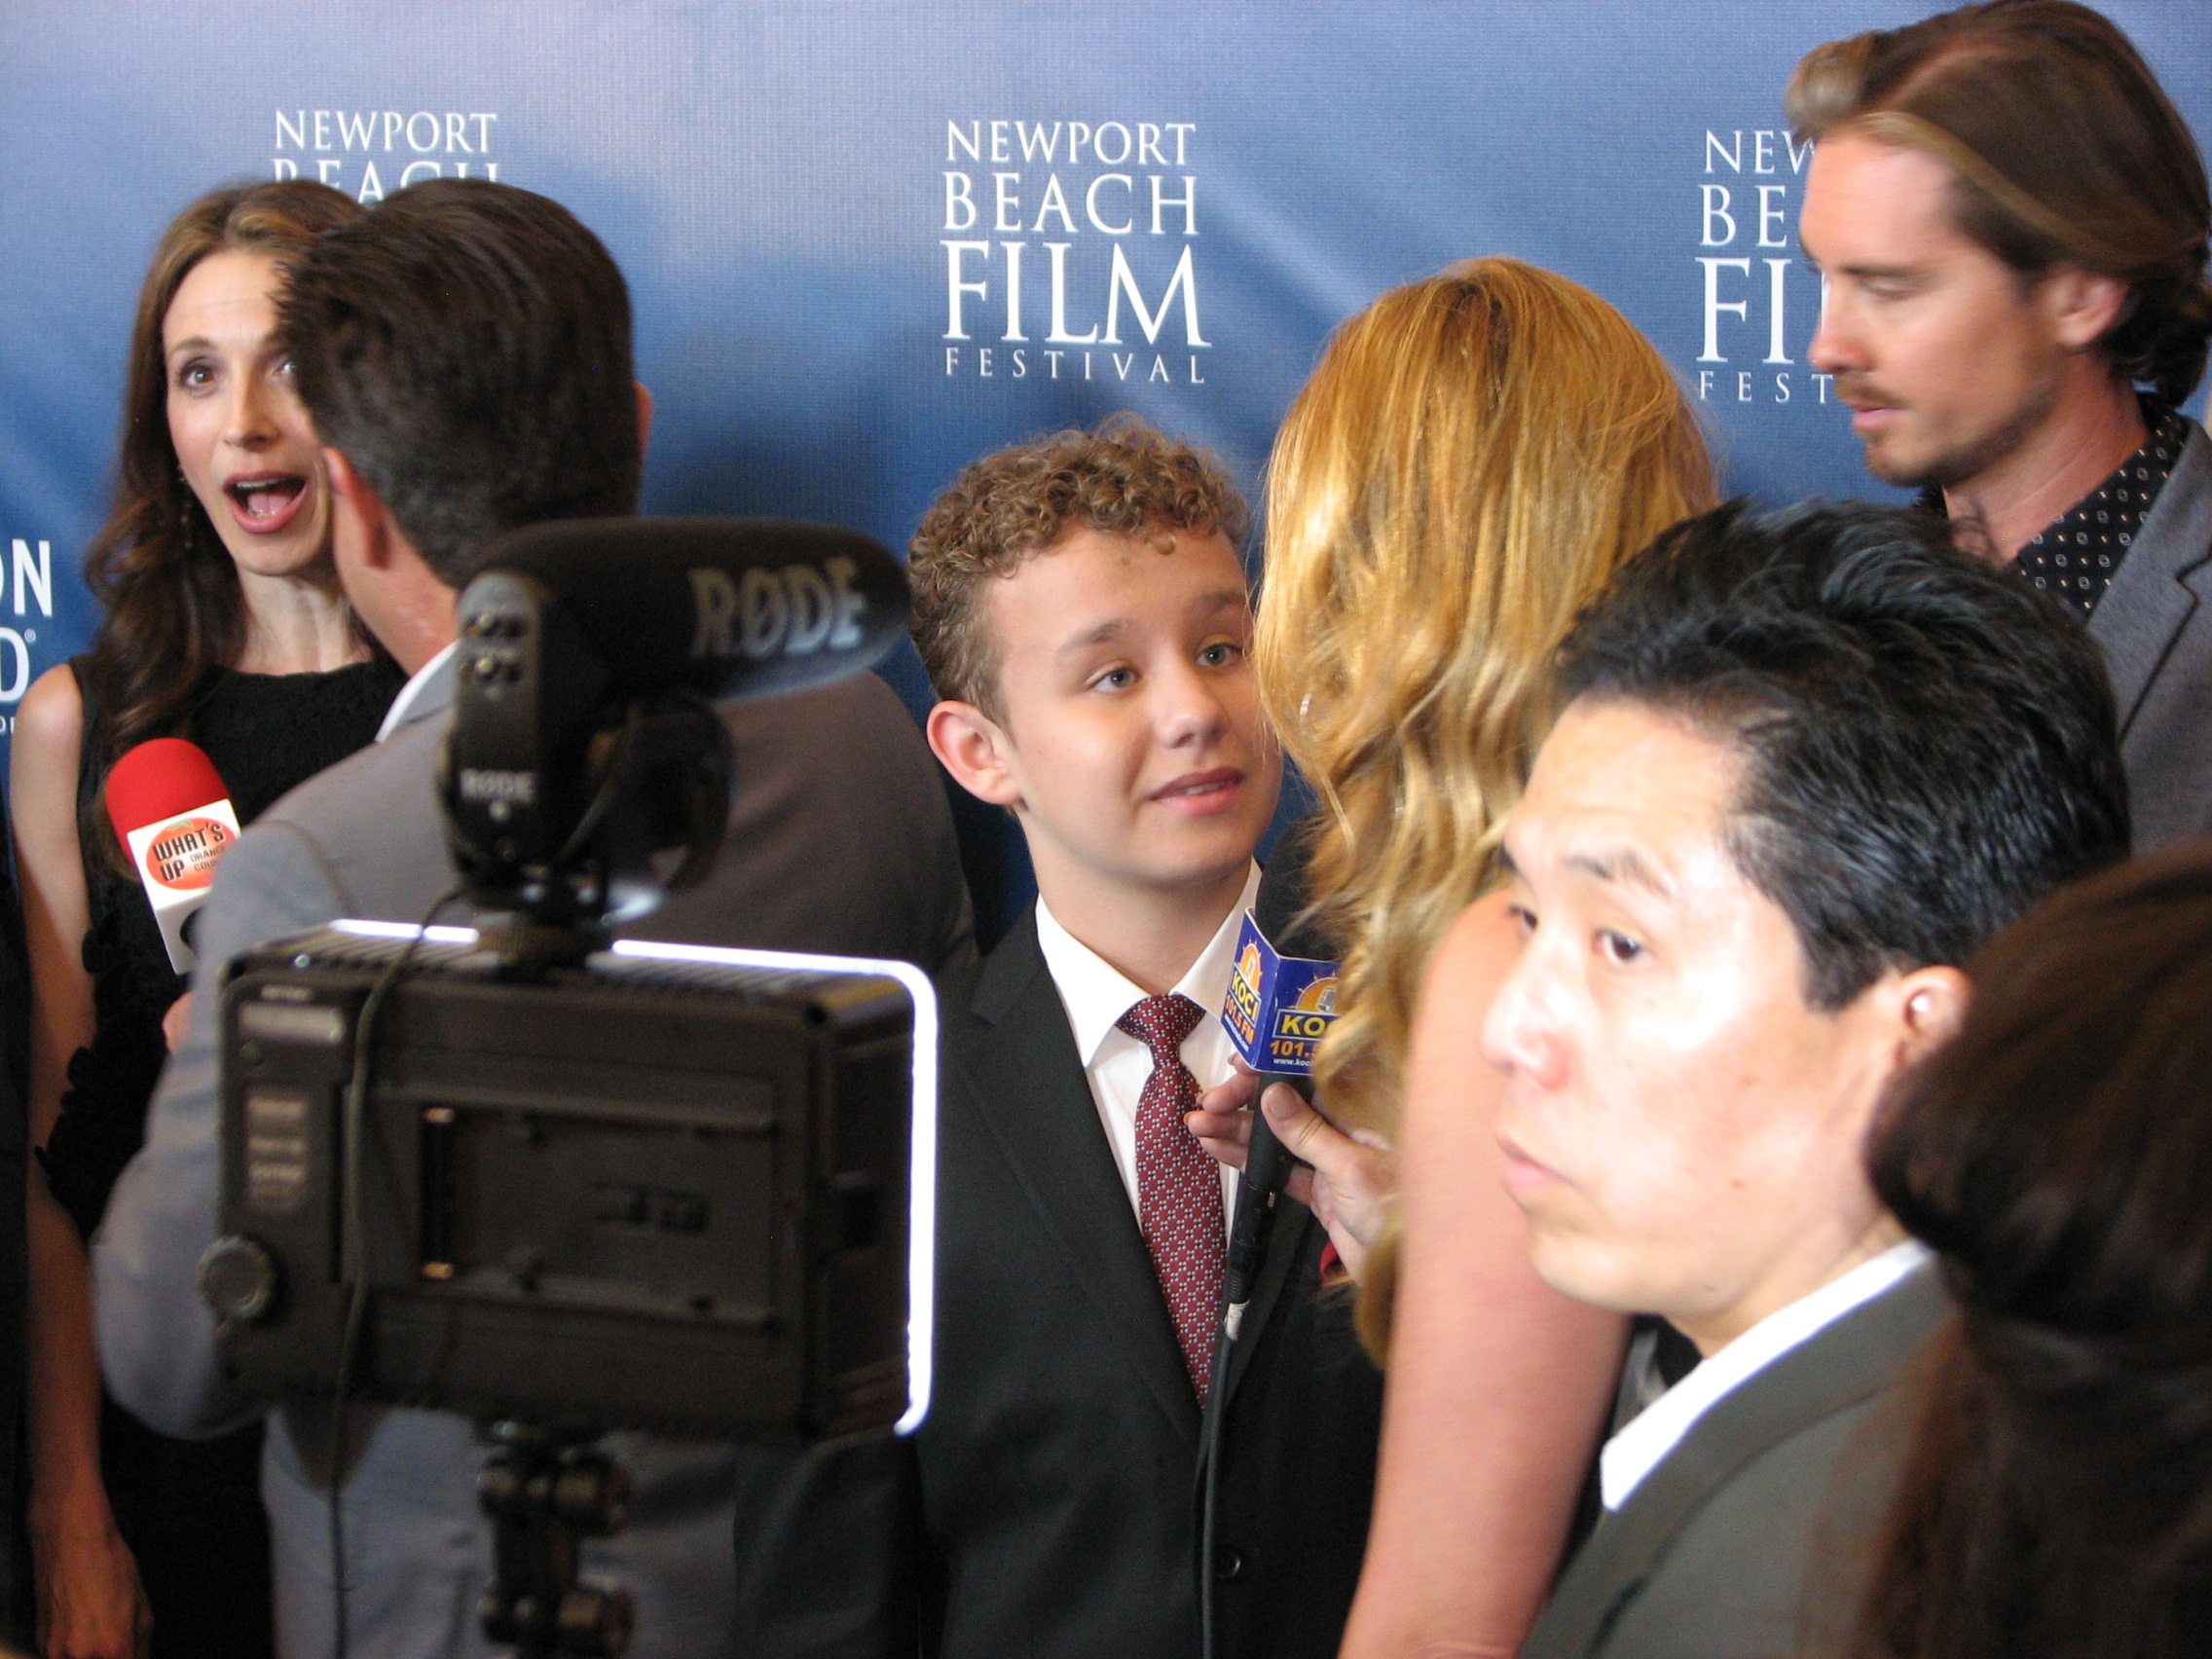 Carsen Warner on the Red Carpet at the Newport Beach Film Festival for the festival opening film LOVESICK.